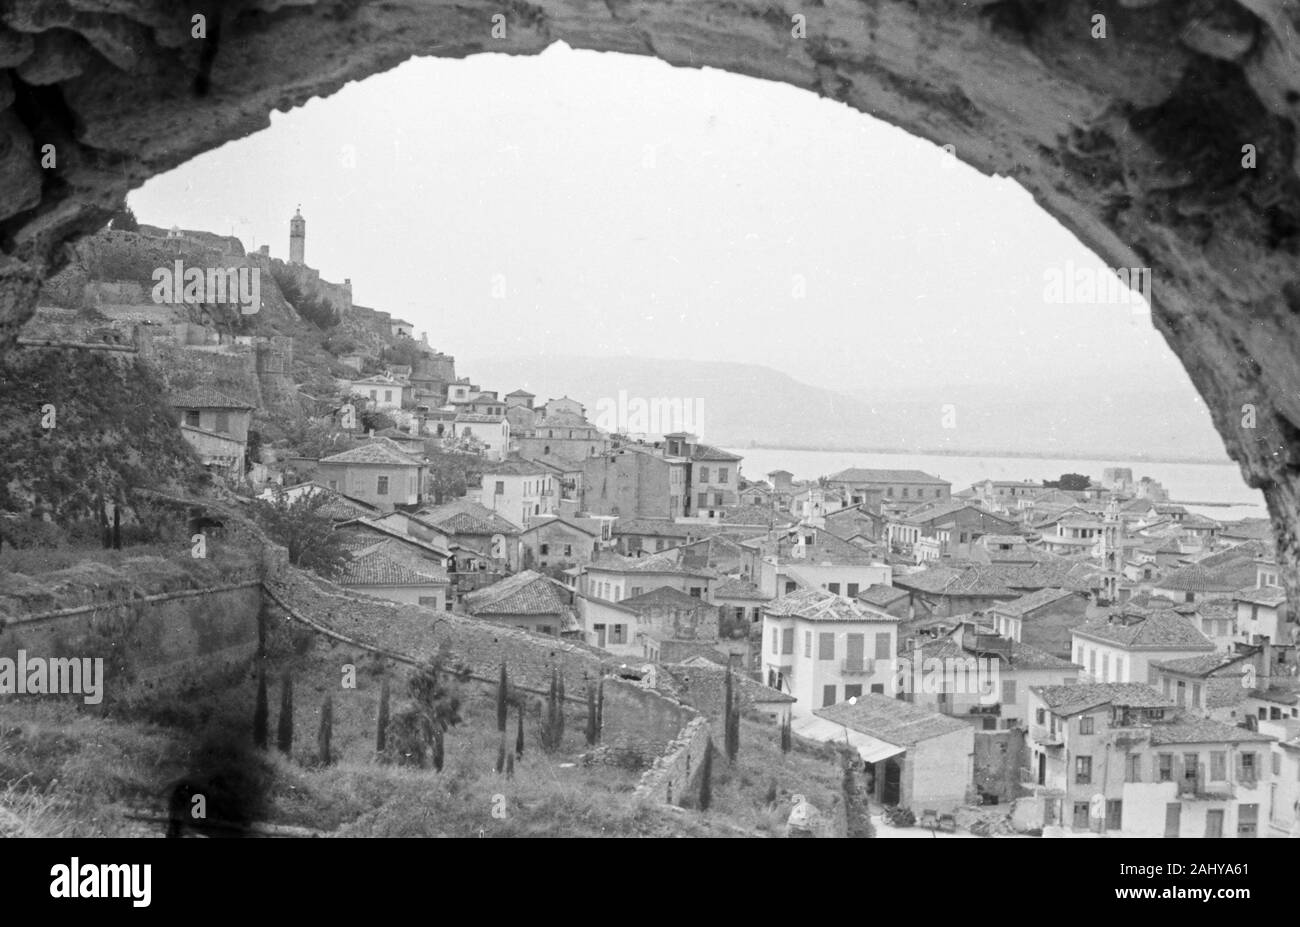 Blick auf die Stadt Nauplia oder Nafplion, Griechenland Peloponnes 1950er Jahre. Vista della città Nauplia o Nafplion, Grecia Peloponneso 1950s. Foto Stock